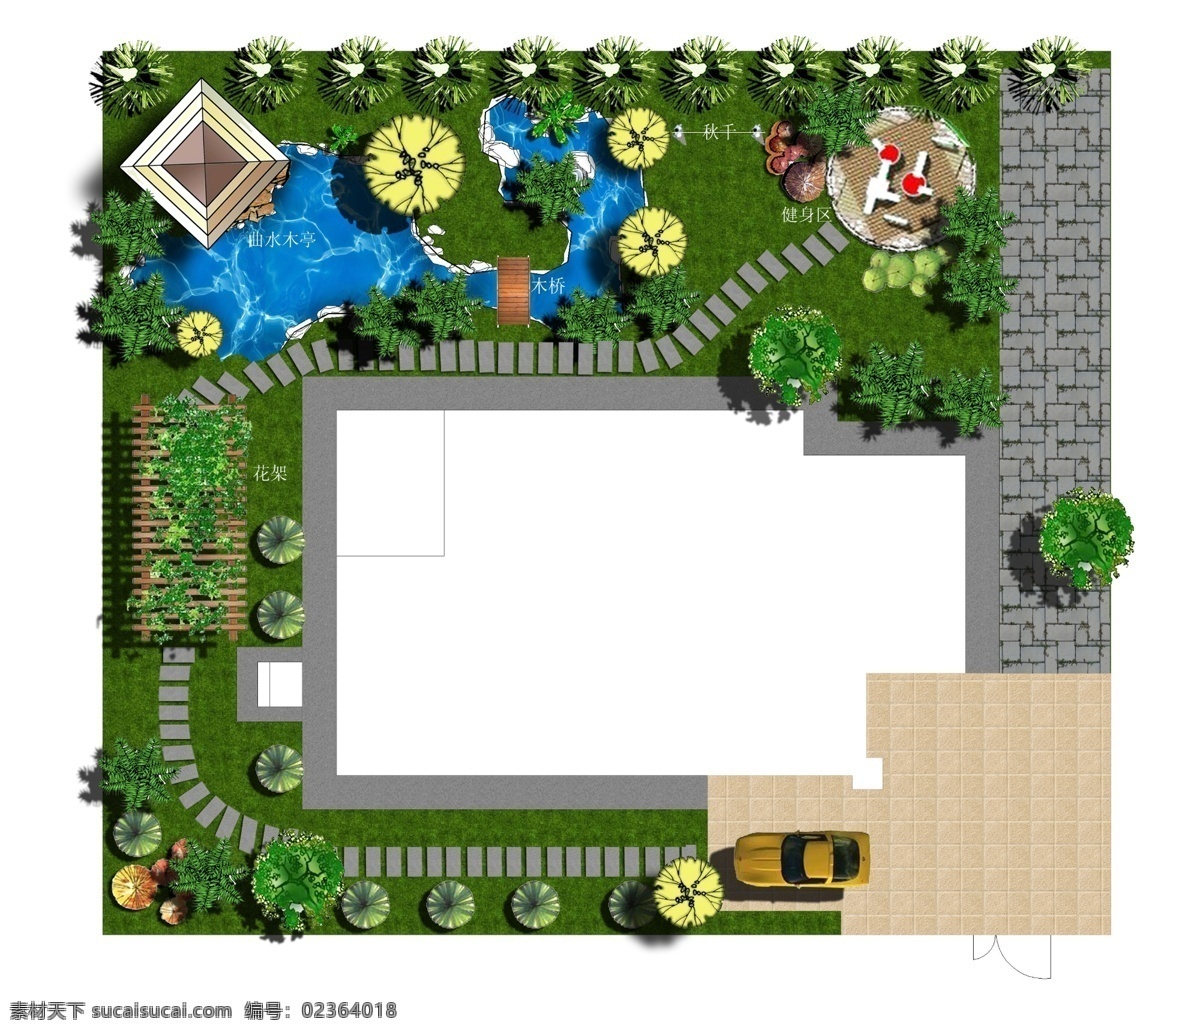 别墅 景观 平面图 游泳池 马路 鲜花 草地 树木 房屋 建筑物 白色背景 环境设计 景观设计